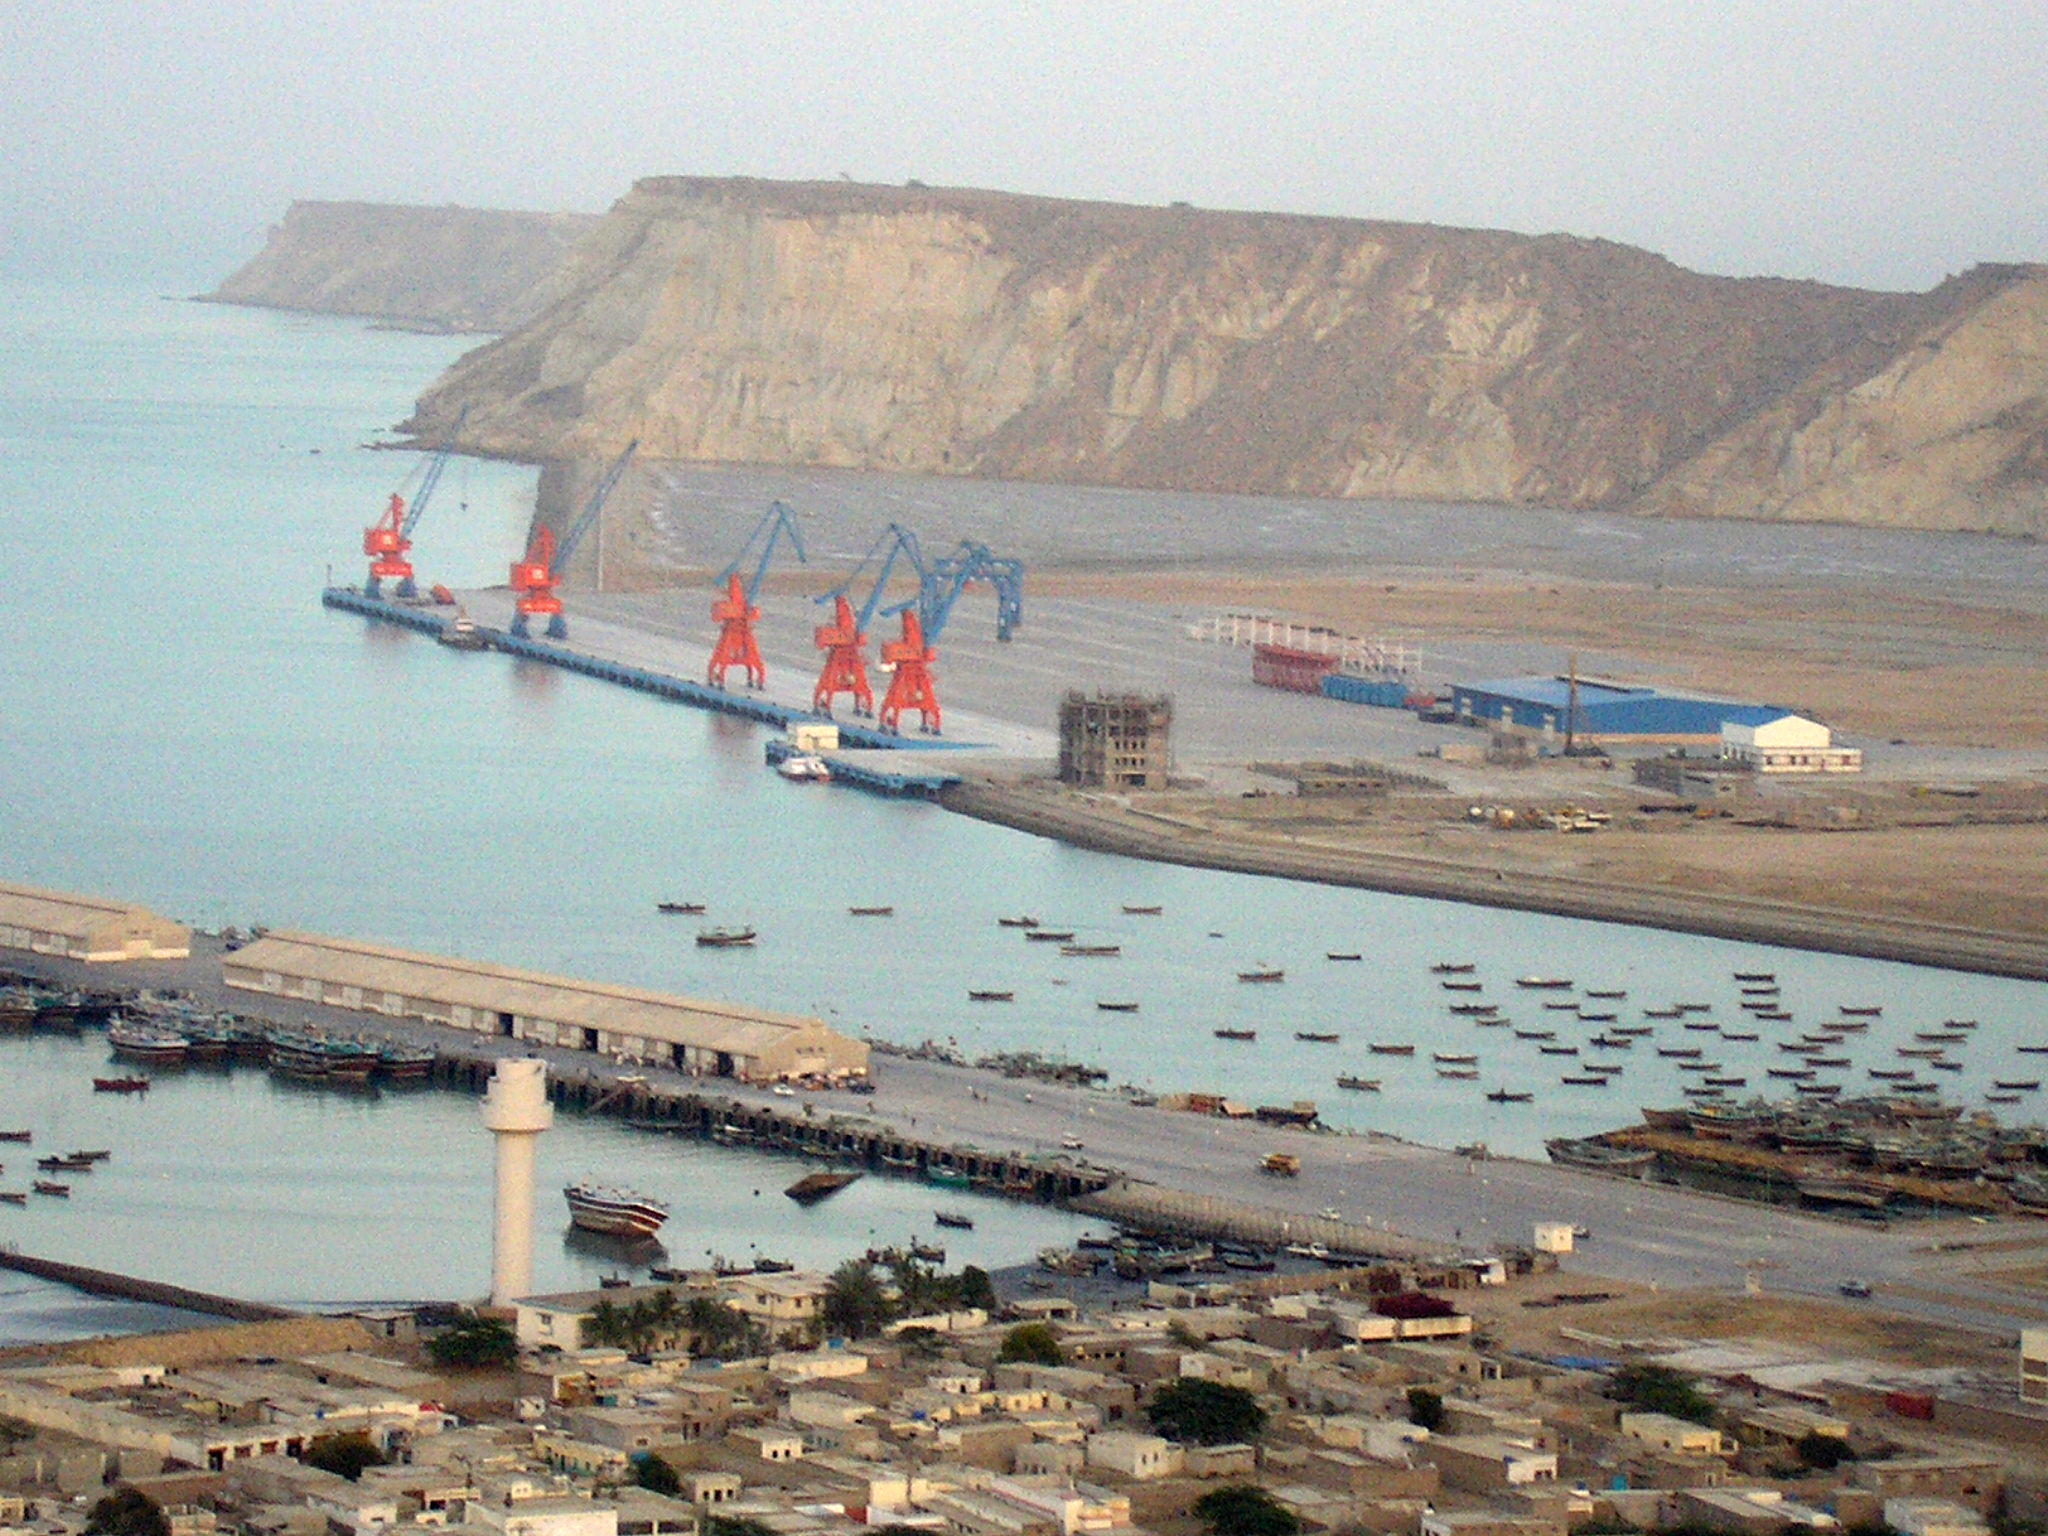 Gwadar Port. Photo by J. Patrick Fischer